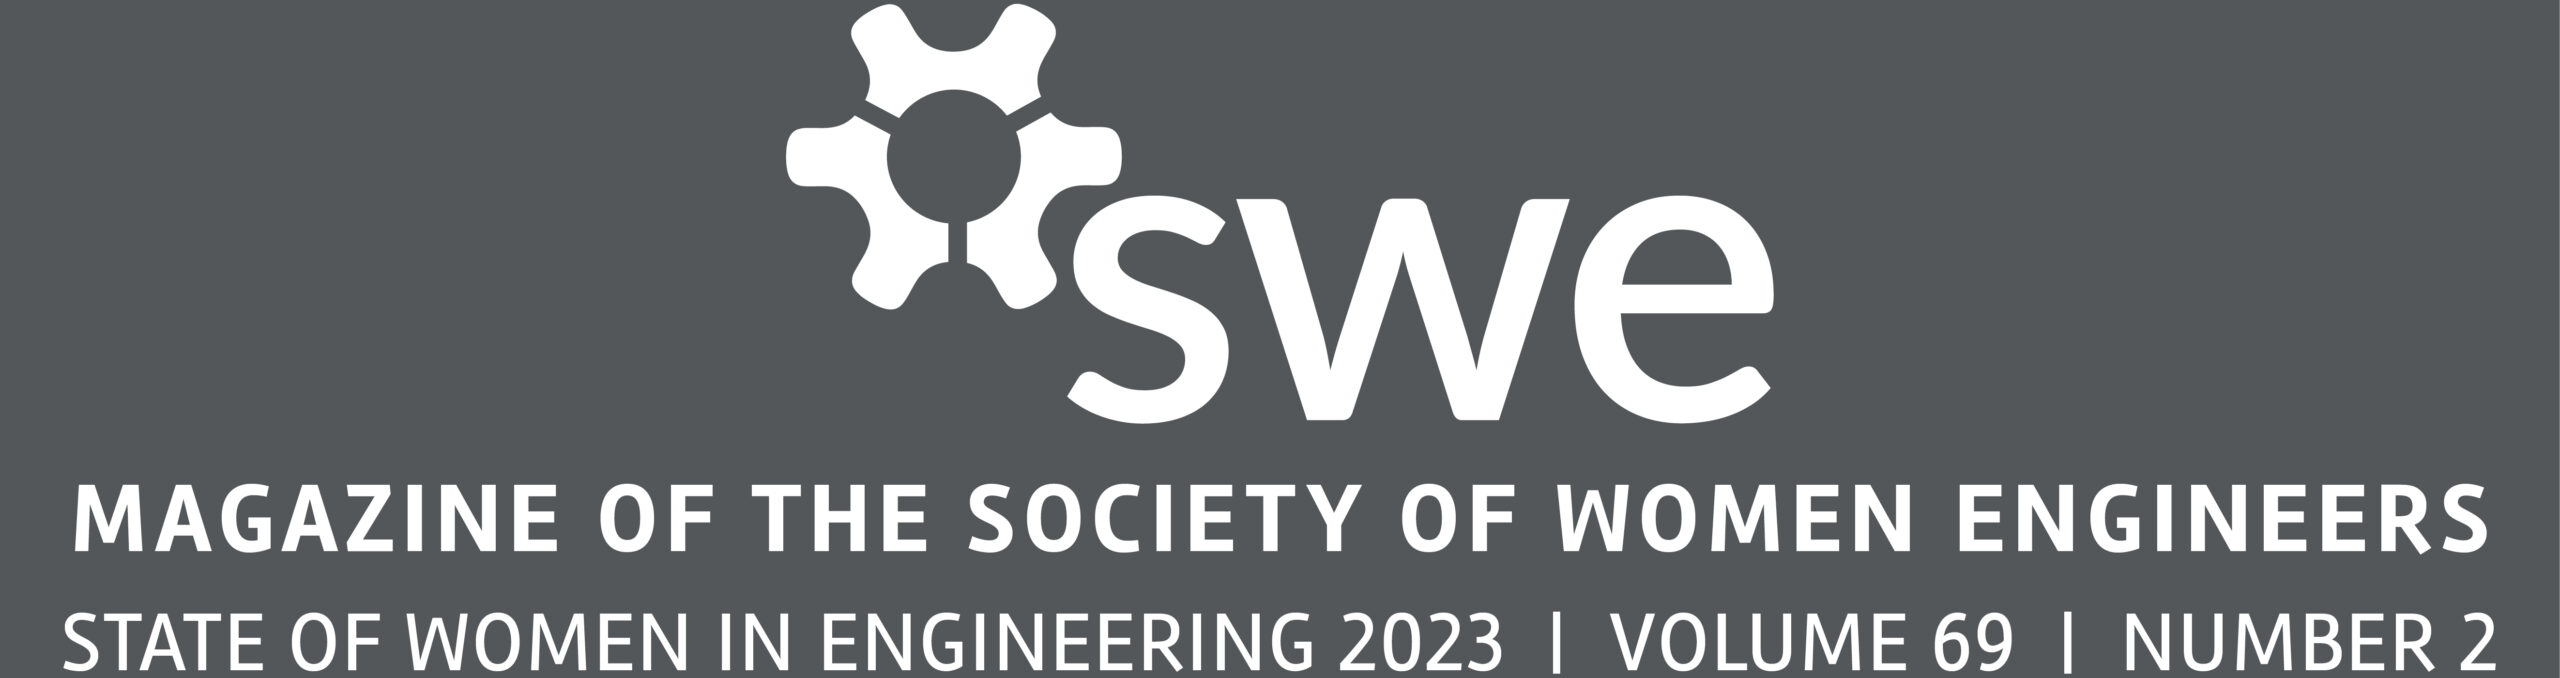 Society of Women Engineers – Magazine